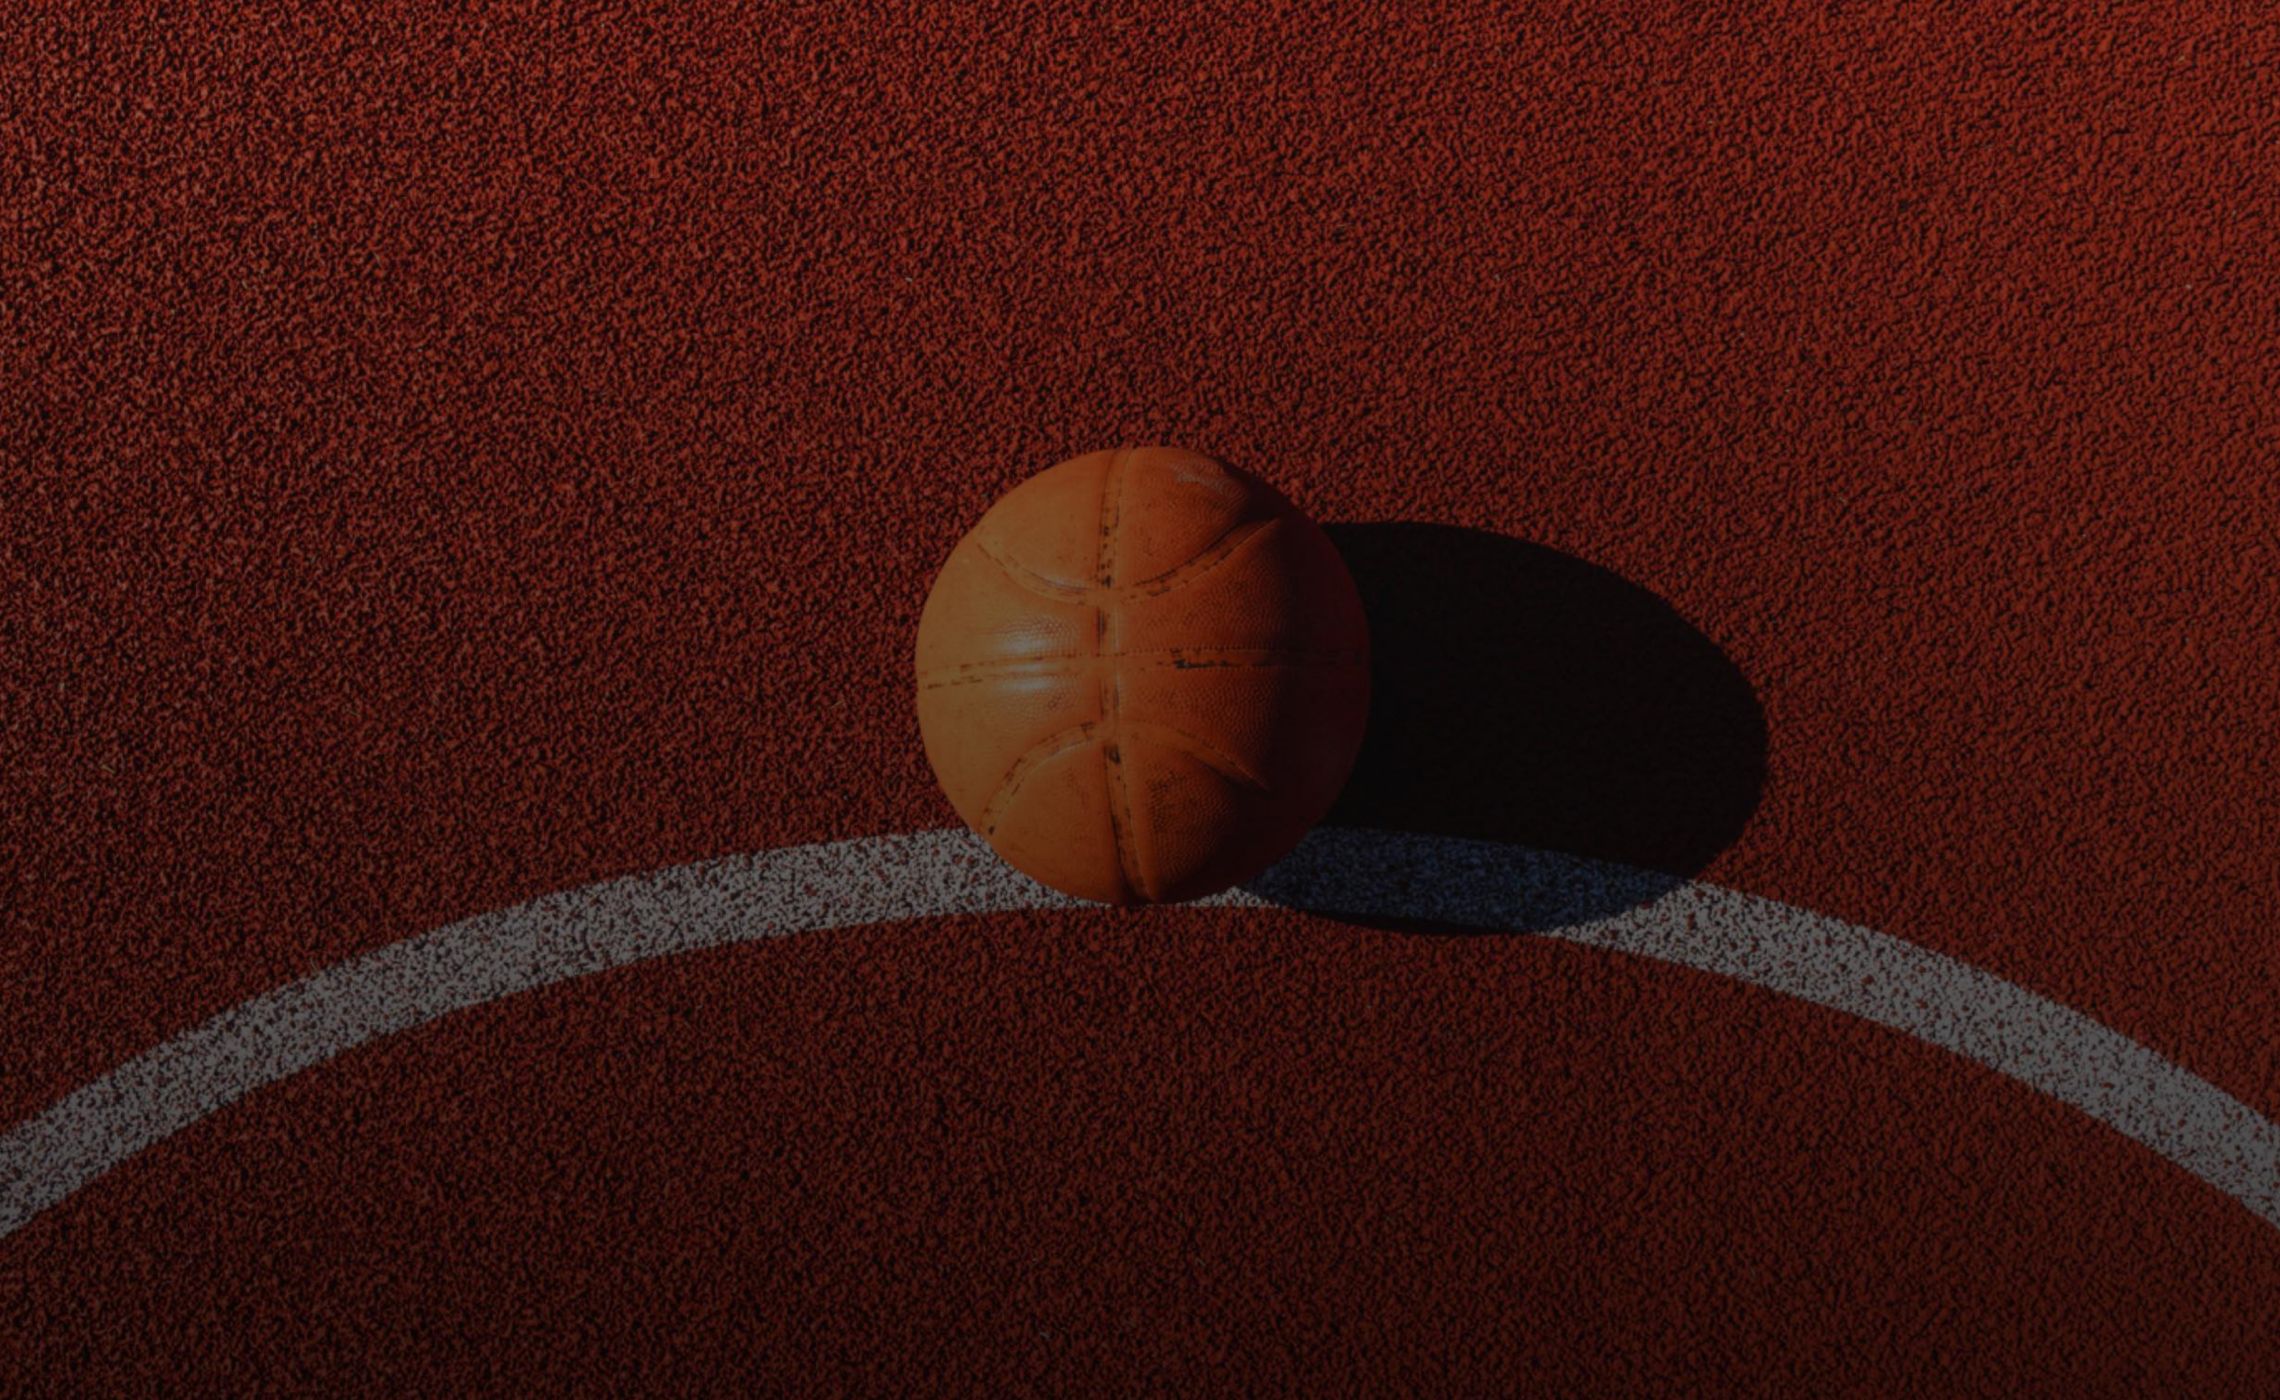 Campo da basket rosso con una riga bianca e una palla da basket appoggiata sul terreno che si vede in primo piano.